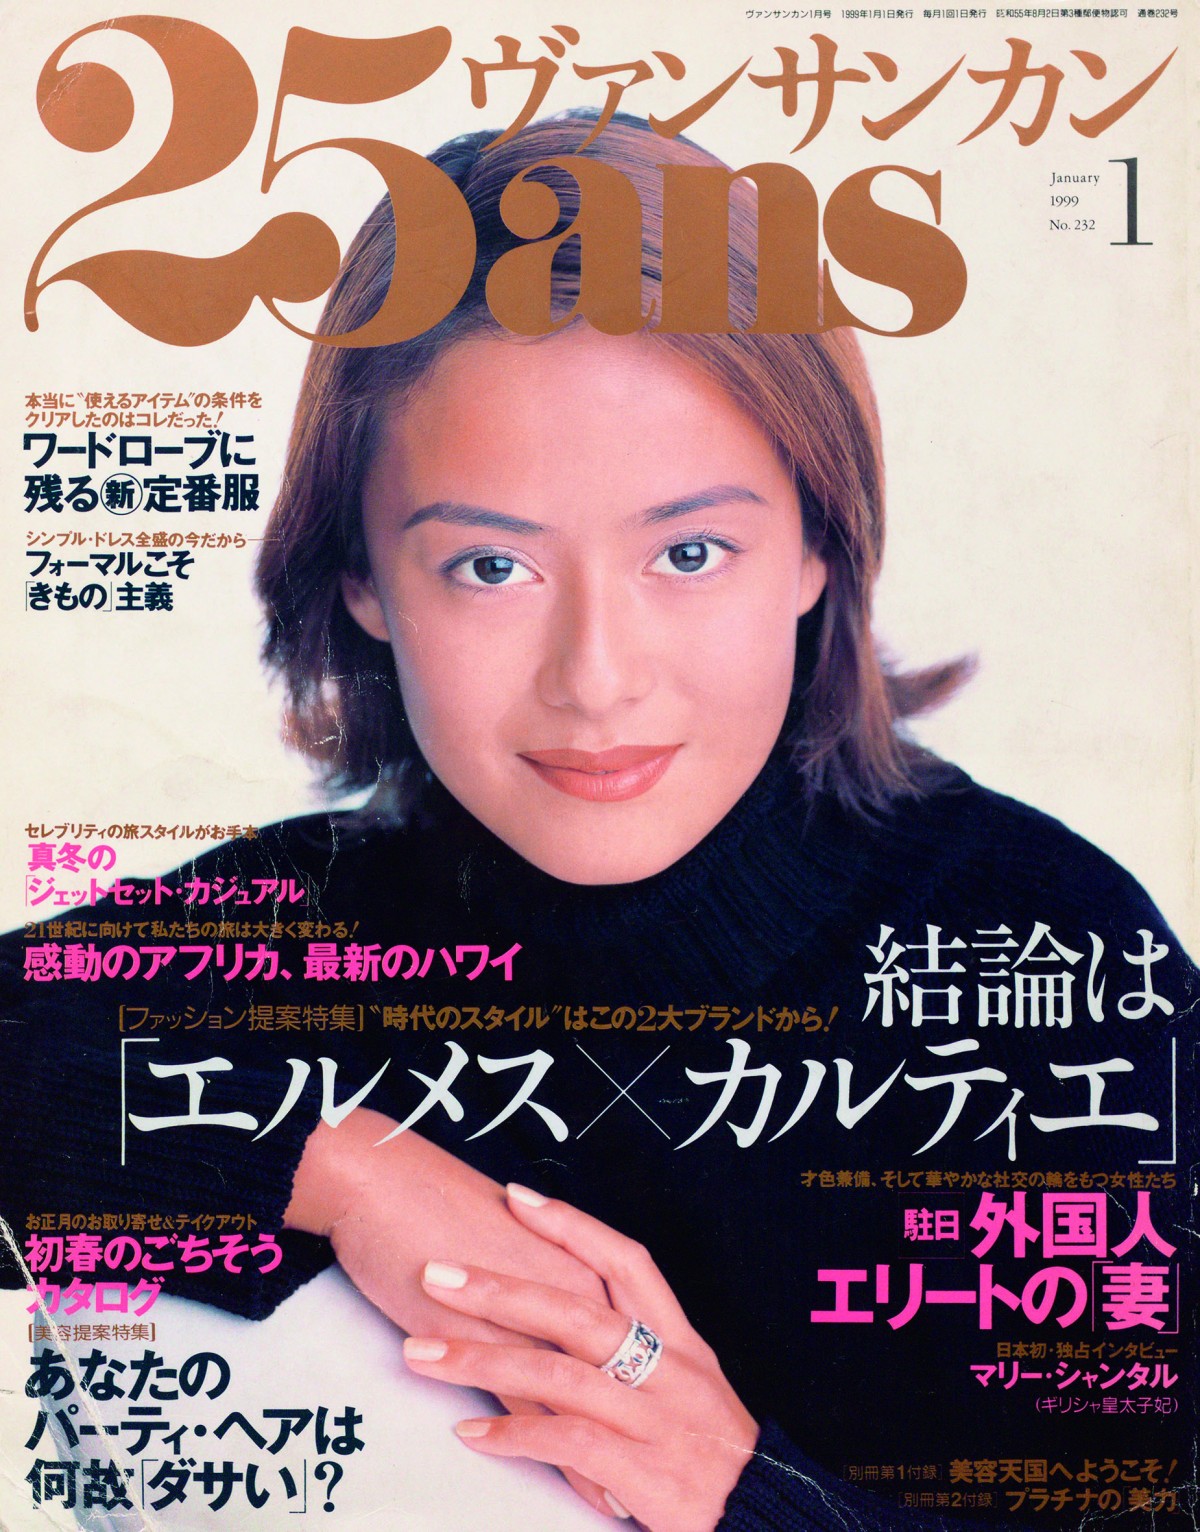 画像・写真 | 後藤久美子、20年前のポーズ再現 『25ans』カバーでエレガンスに魅了 2枚目 | ORICON NEWS